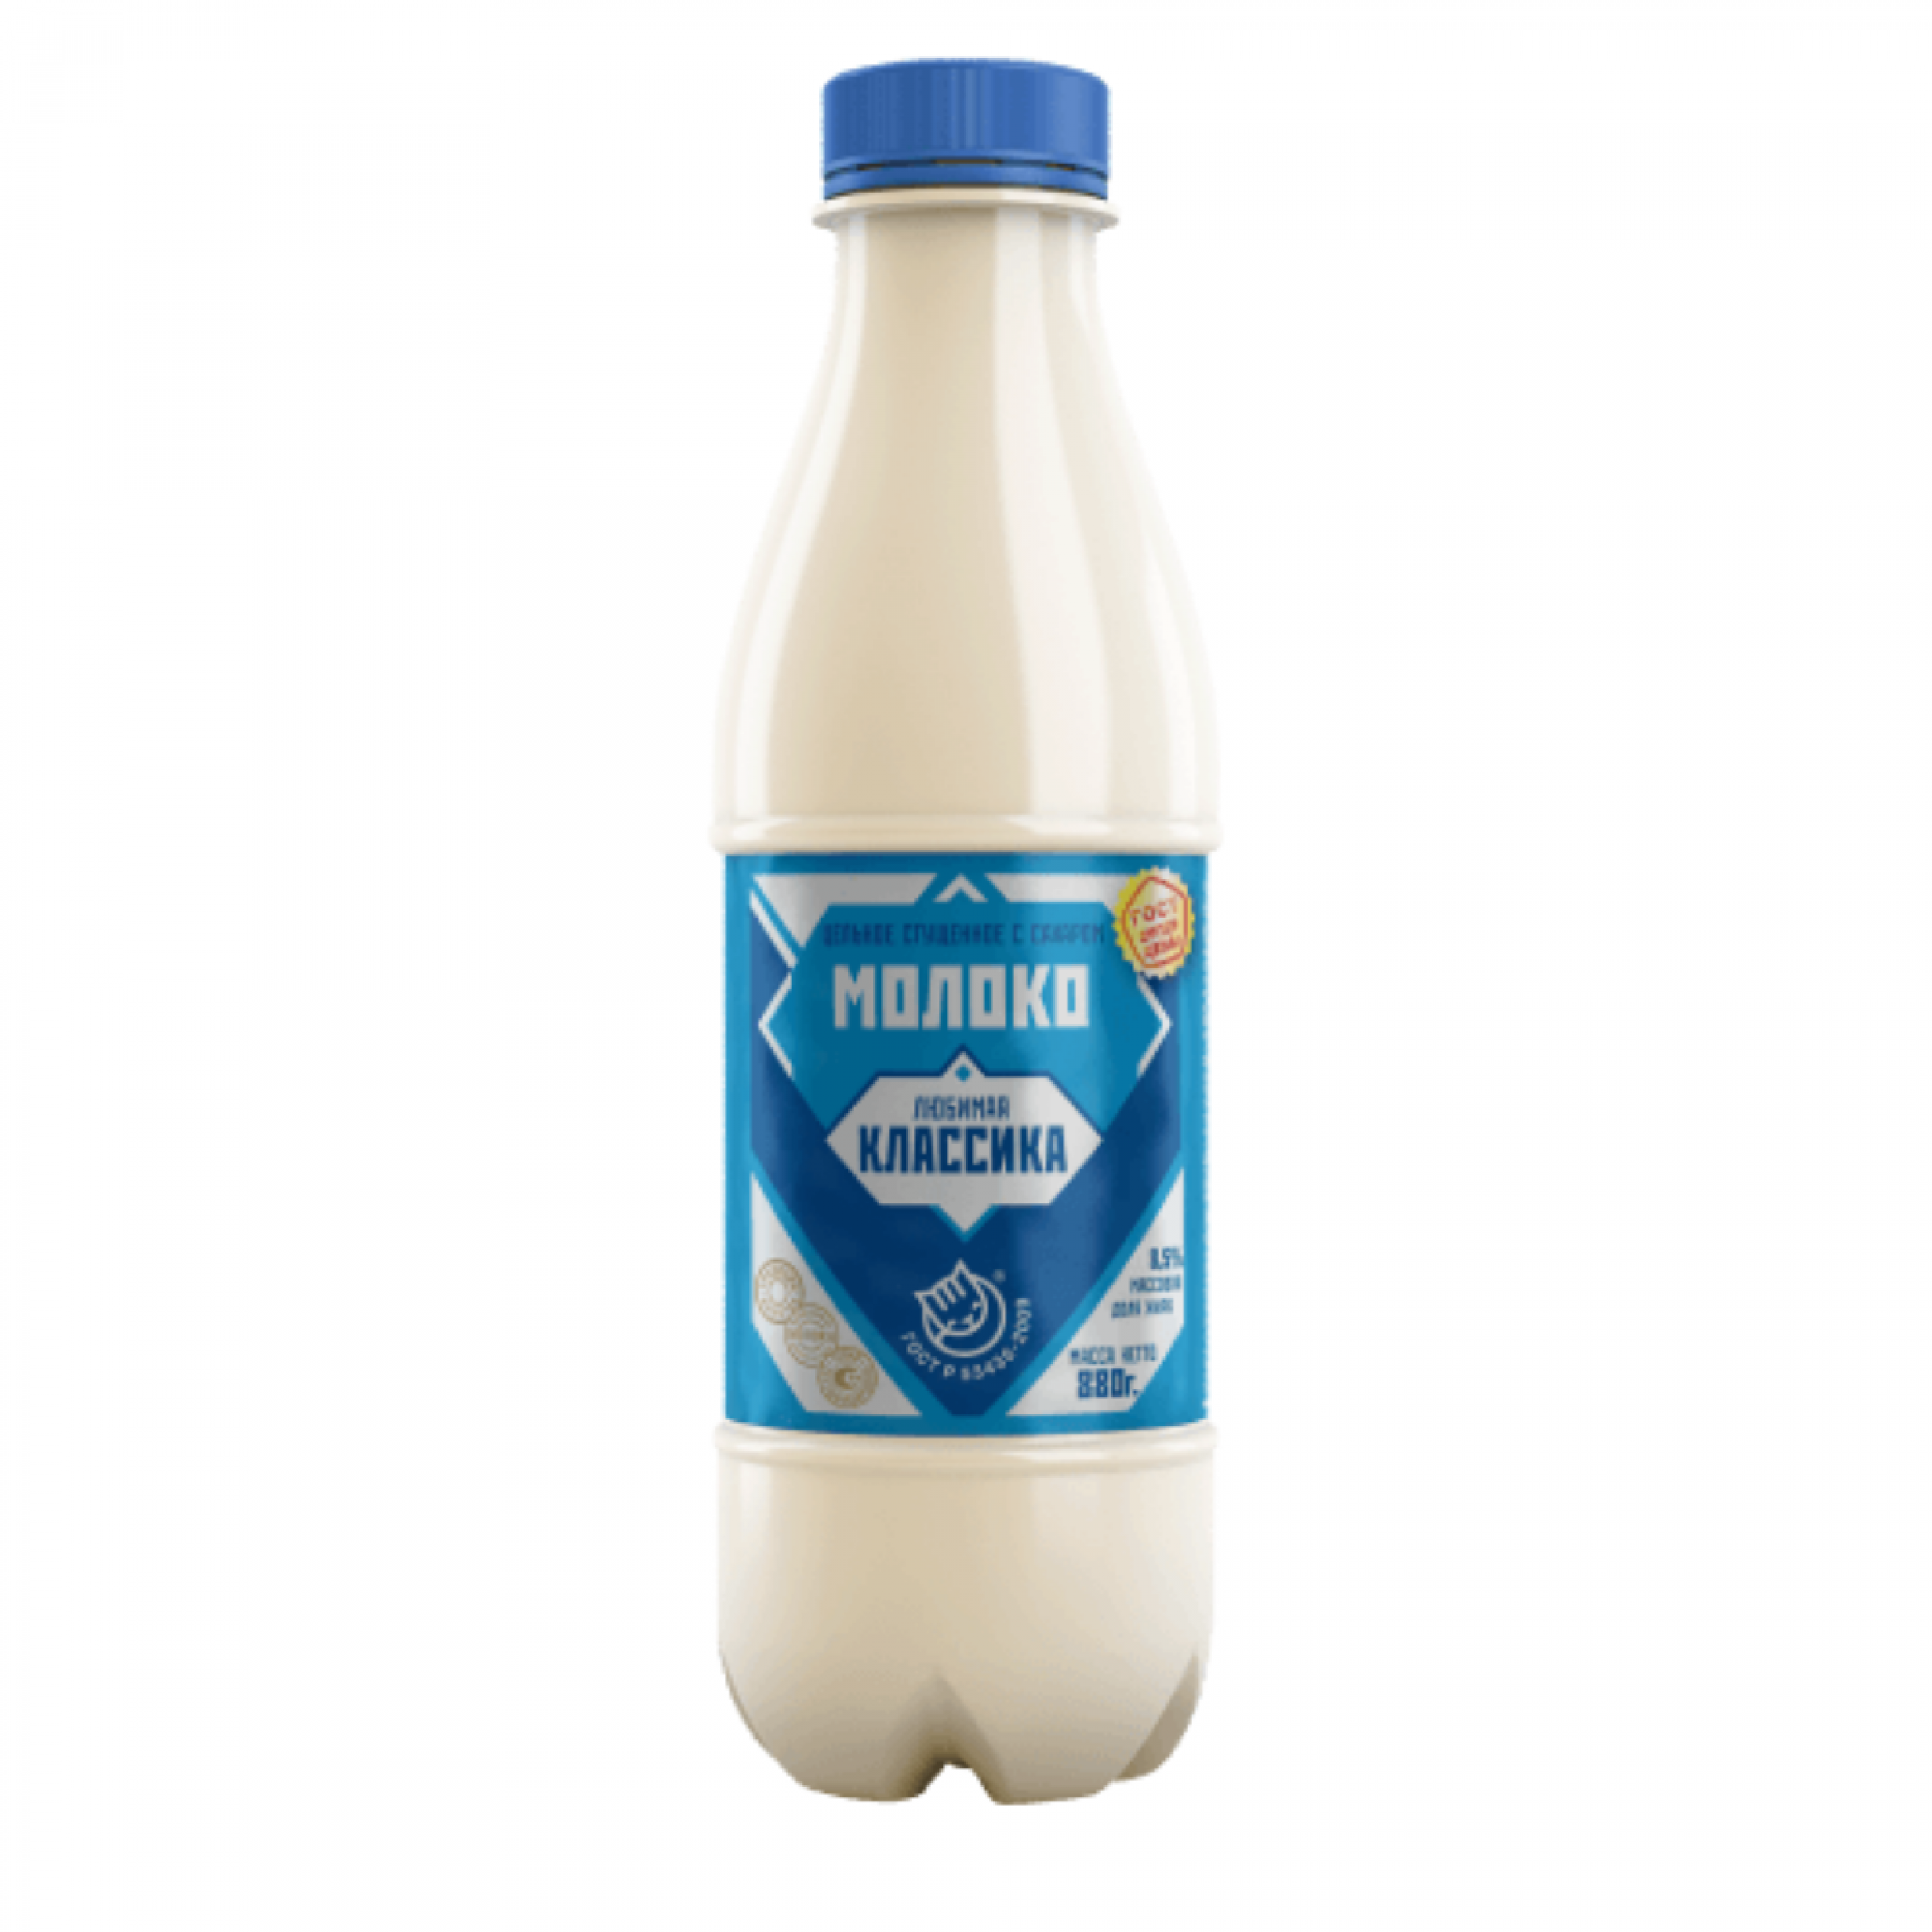 Молоко сгущенное Любимая классика 8.5%, 880 г